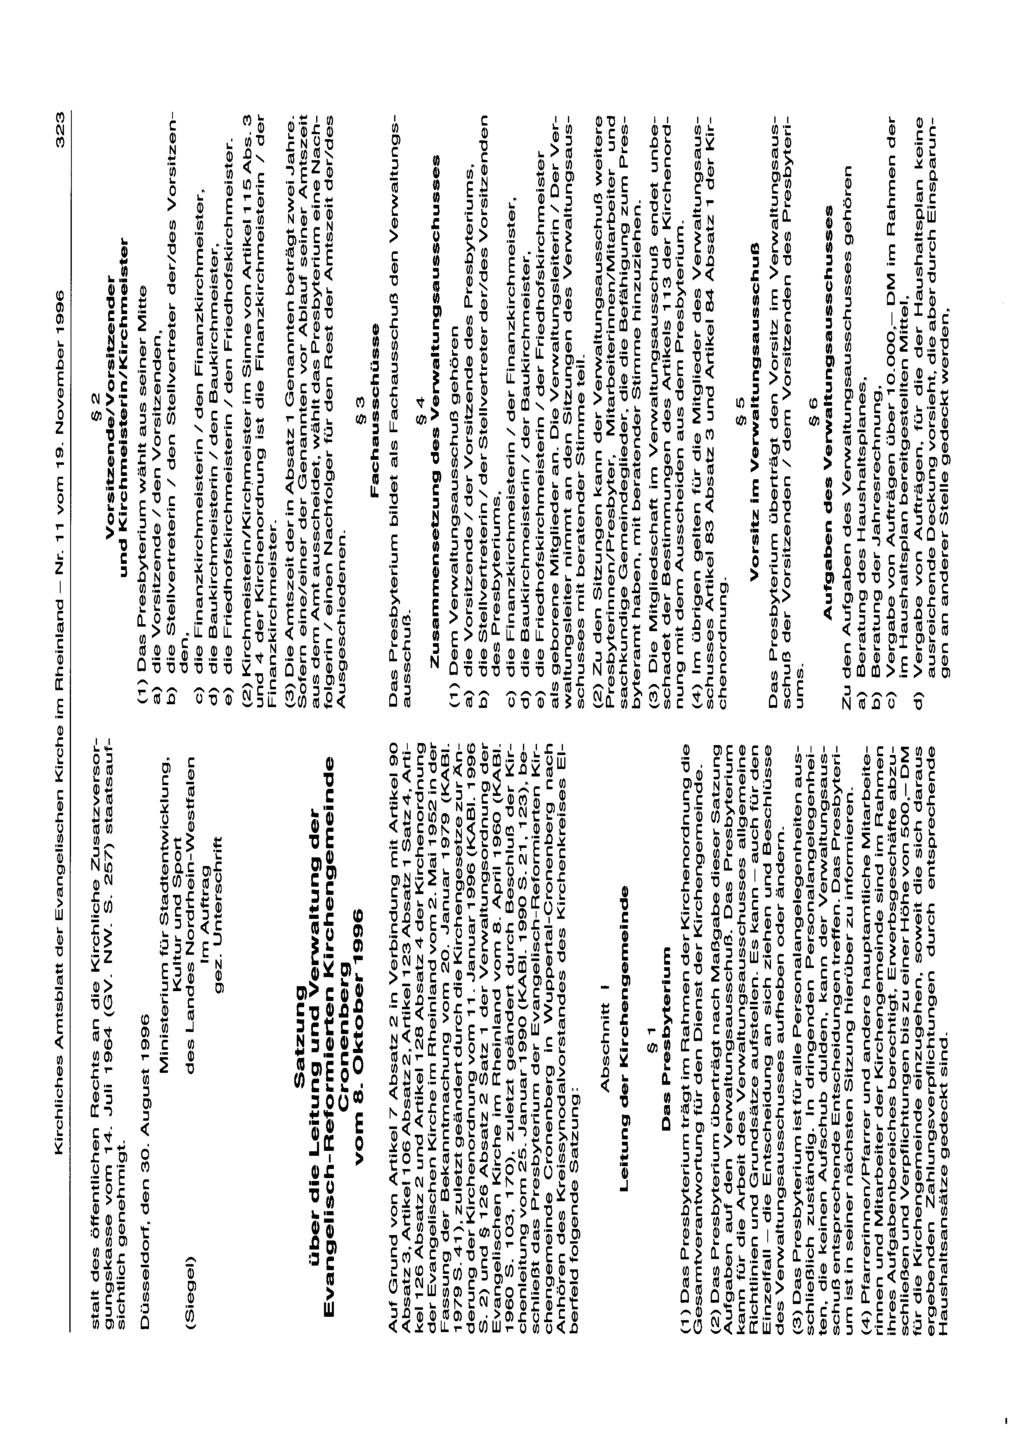 Kirchliches Amtsblatt der Evangelischen Kirche im Rheinland - Nr. 11 vom 19. November 1996 323 stalt des öffentlichen Rechts an die Kirchliche Zusatzversorgungskasse vom 14. Juli 1964 (GV. NW. S.